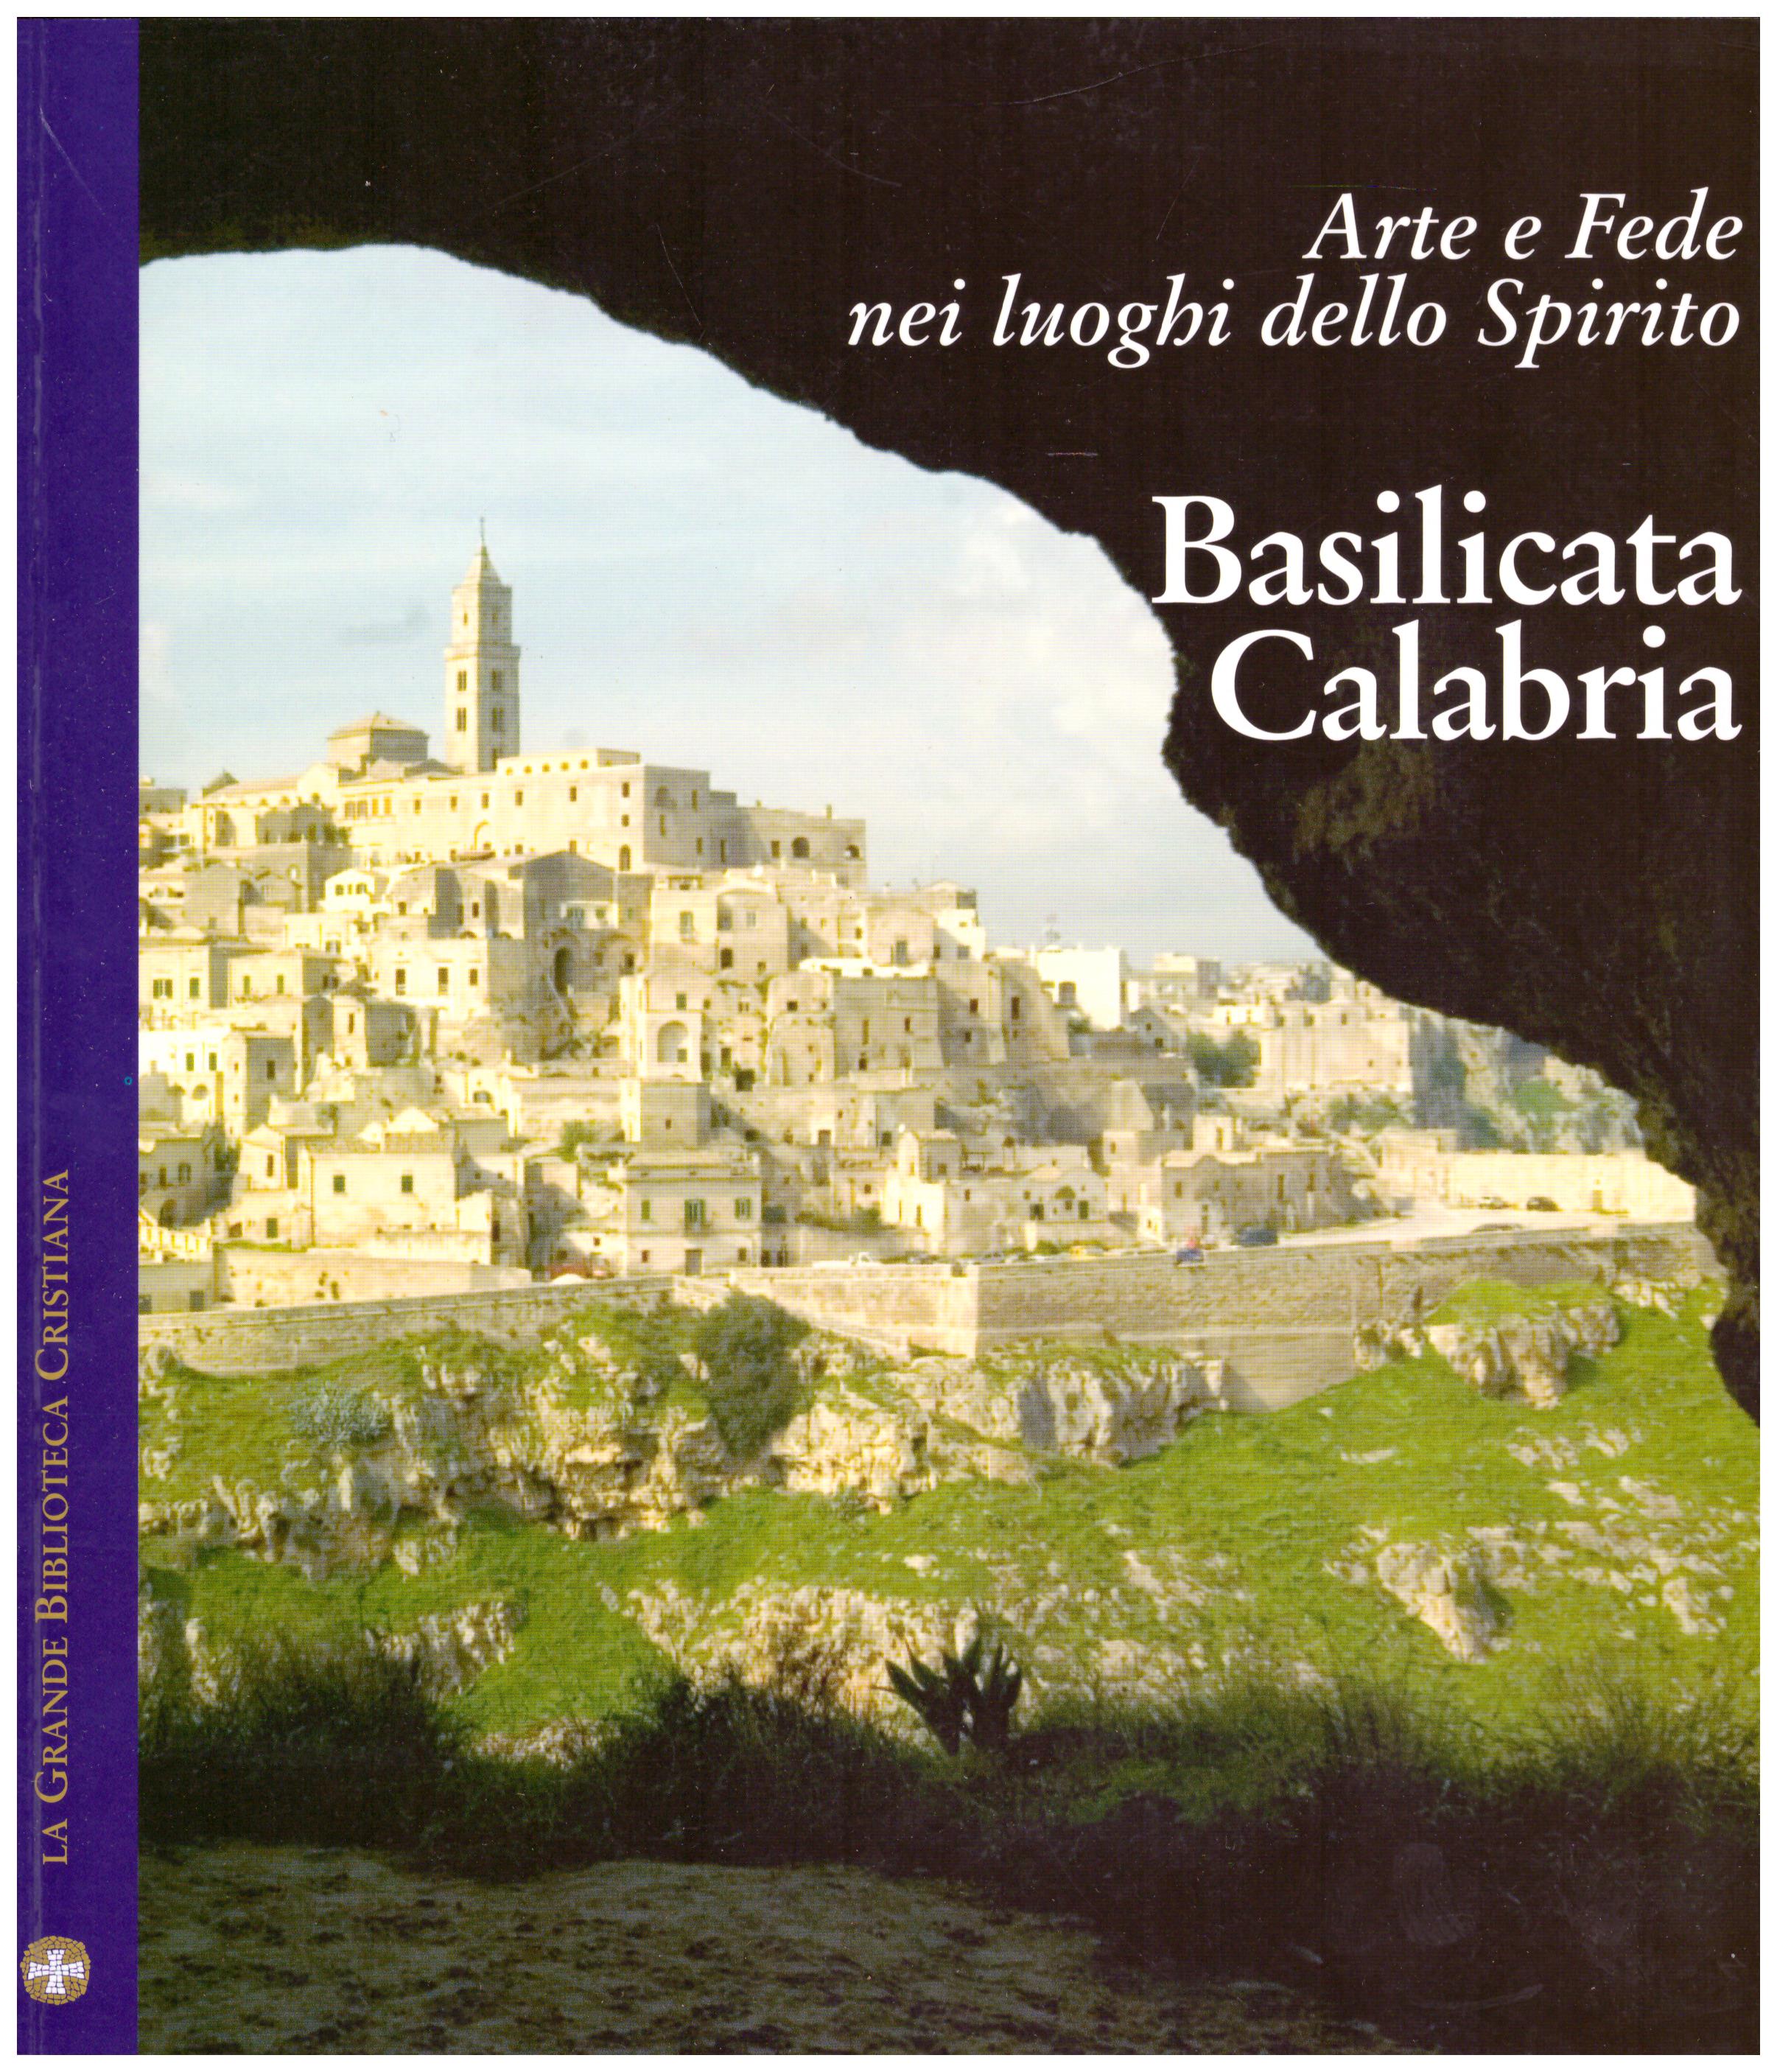 Titolo: Arte e fede nei luoghi dello spirito, basilicata e calabria Autore : AA.VV. Editore: famiglia cristiana